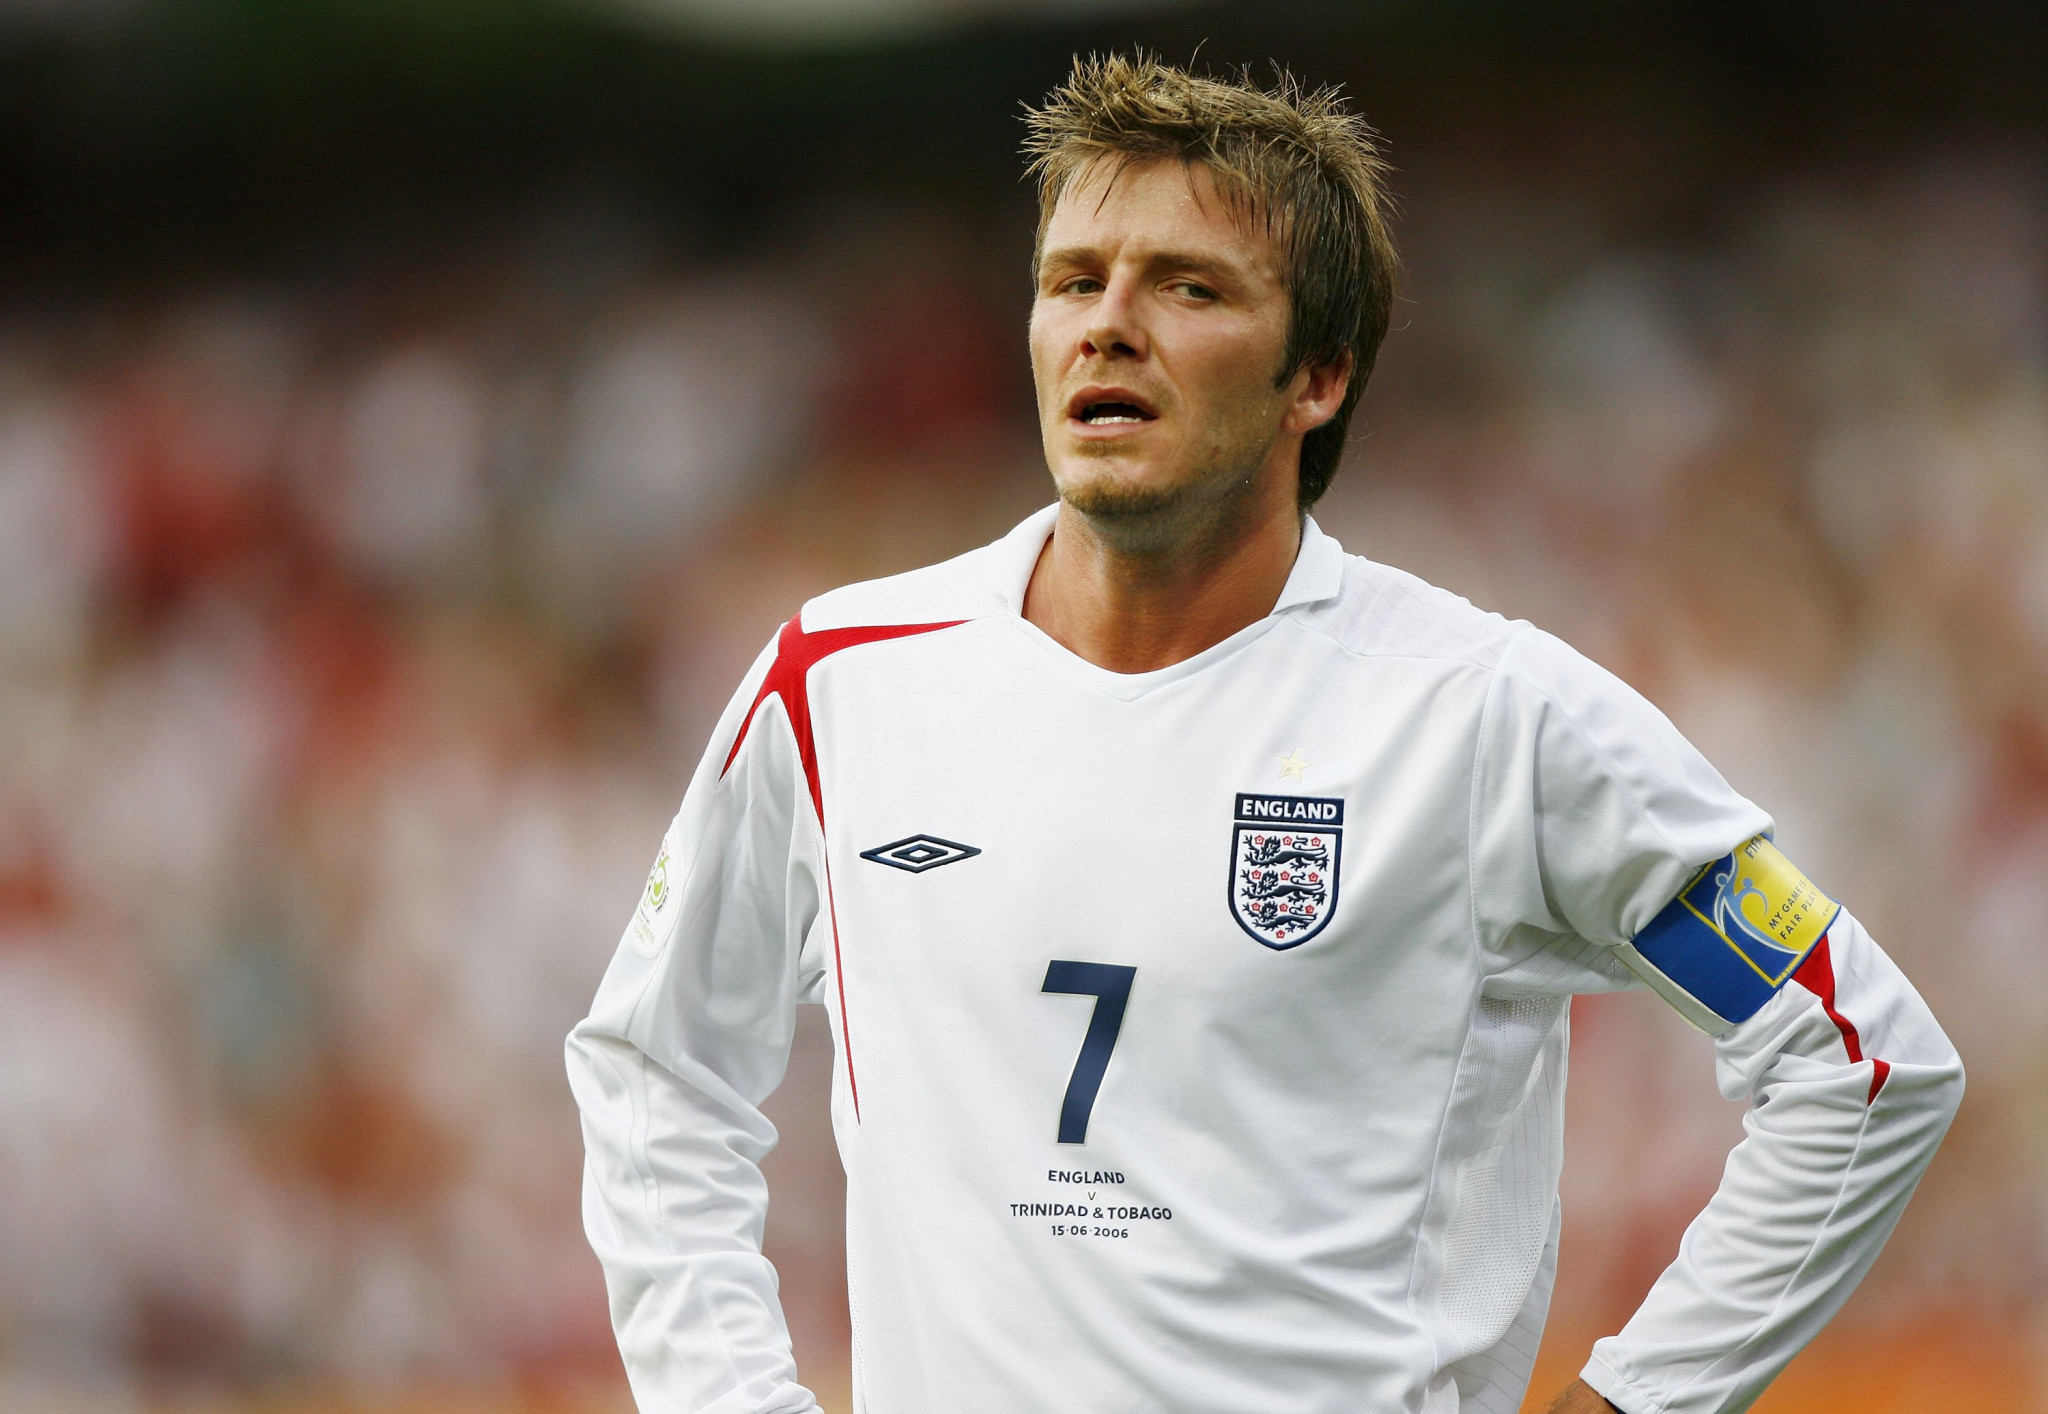 David Beckham, who made 115 caps for England's national football team, said he was 